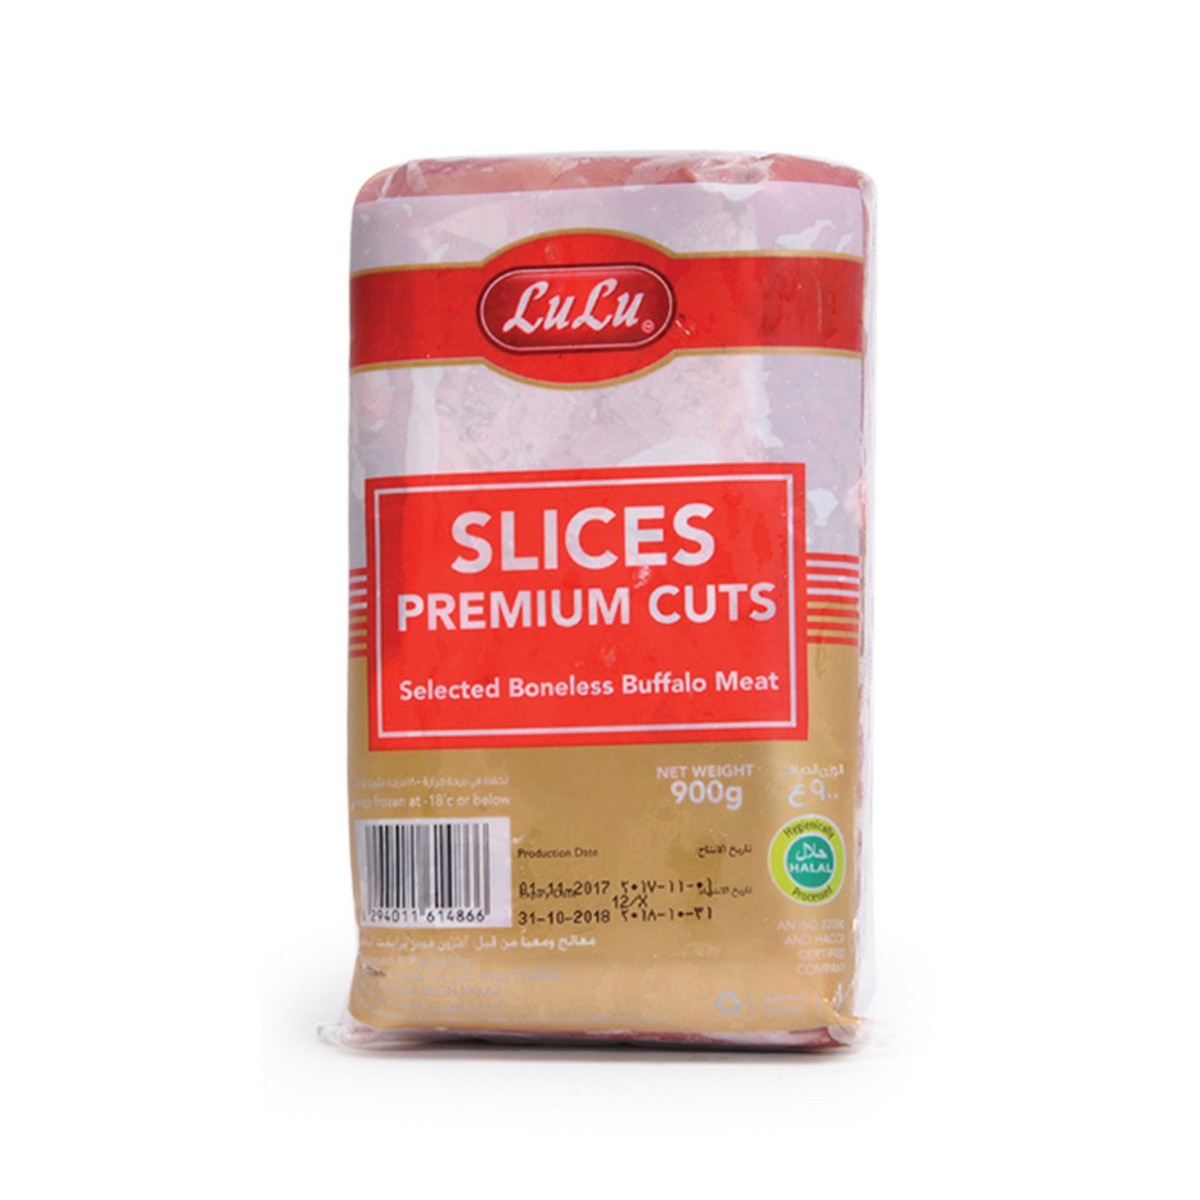 Lulu Frozen Slices Premium Cuts Buffalo Meat 900g Beef Cubes | Lulu KSA